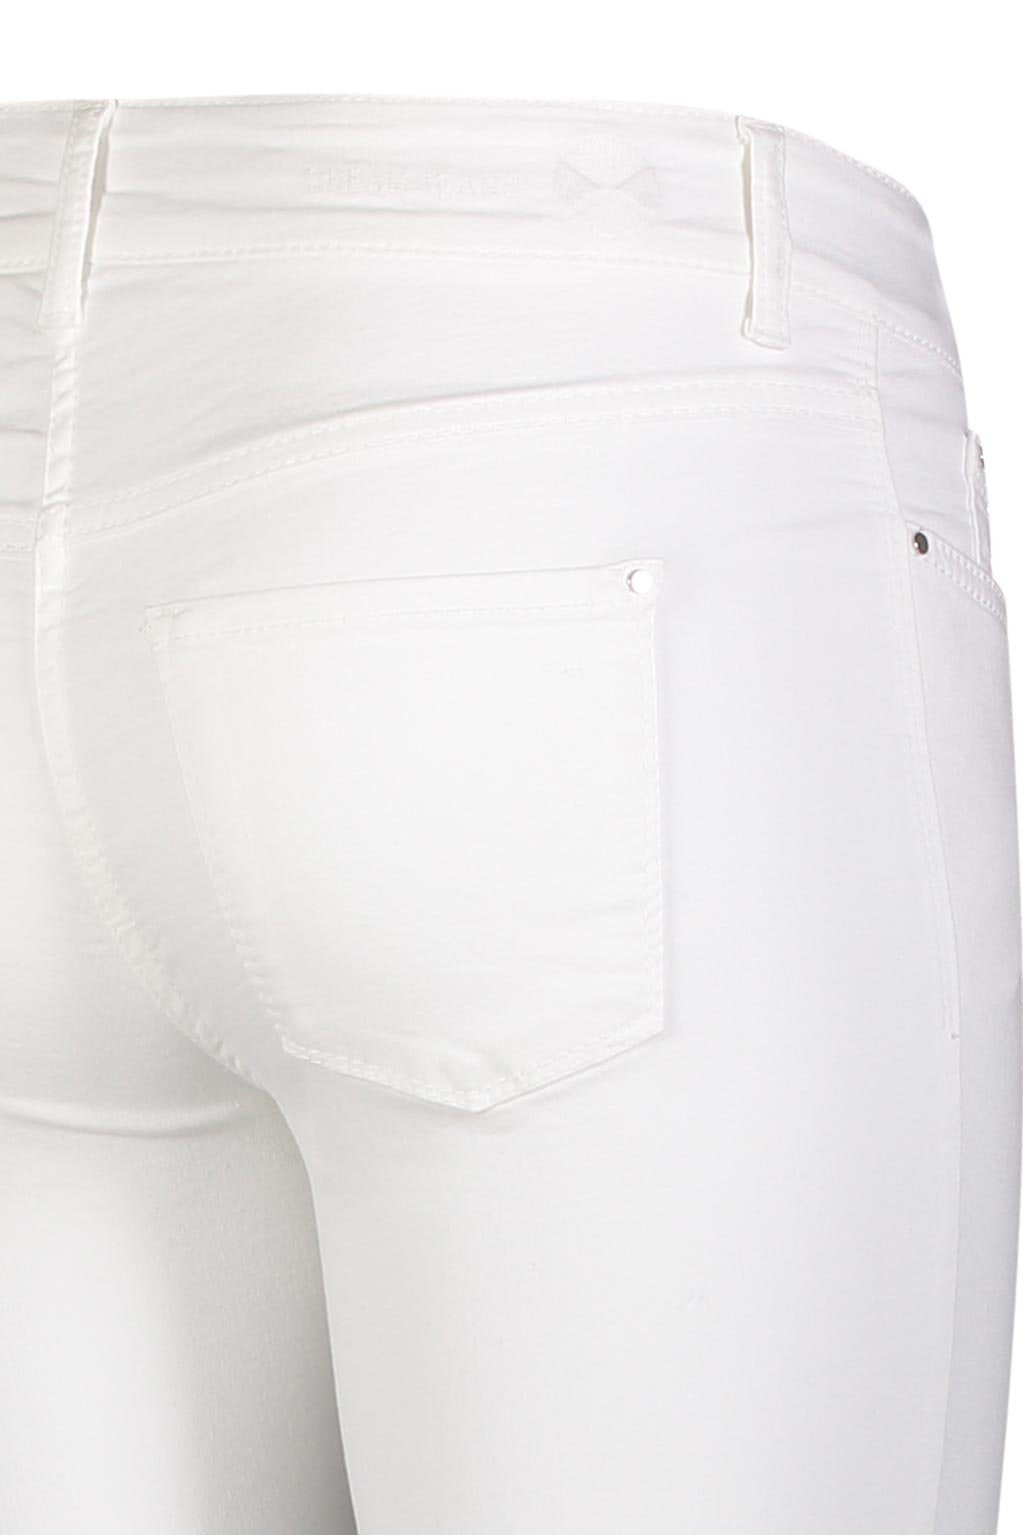 sorgt für Dream Qualität Hochelastische perfekten den Skinny whitedeni Sitz MAC Skinny-fit-Jeans